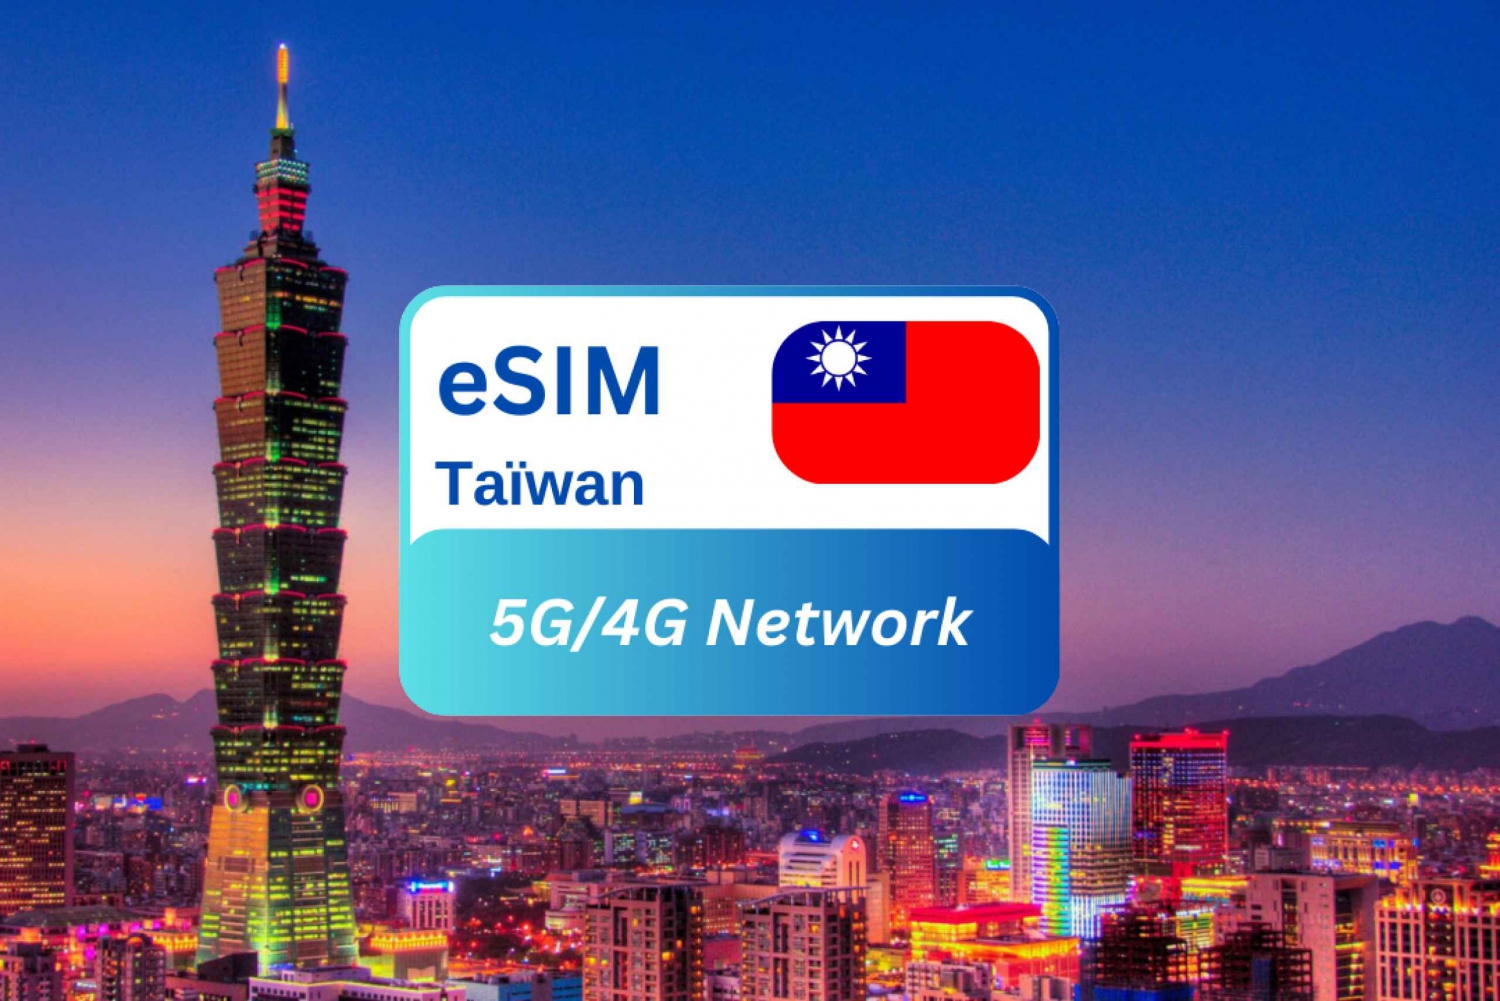 Nova Taipei: Plano de dados eSIM sem interrupções para viajantes de Taiwan